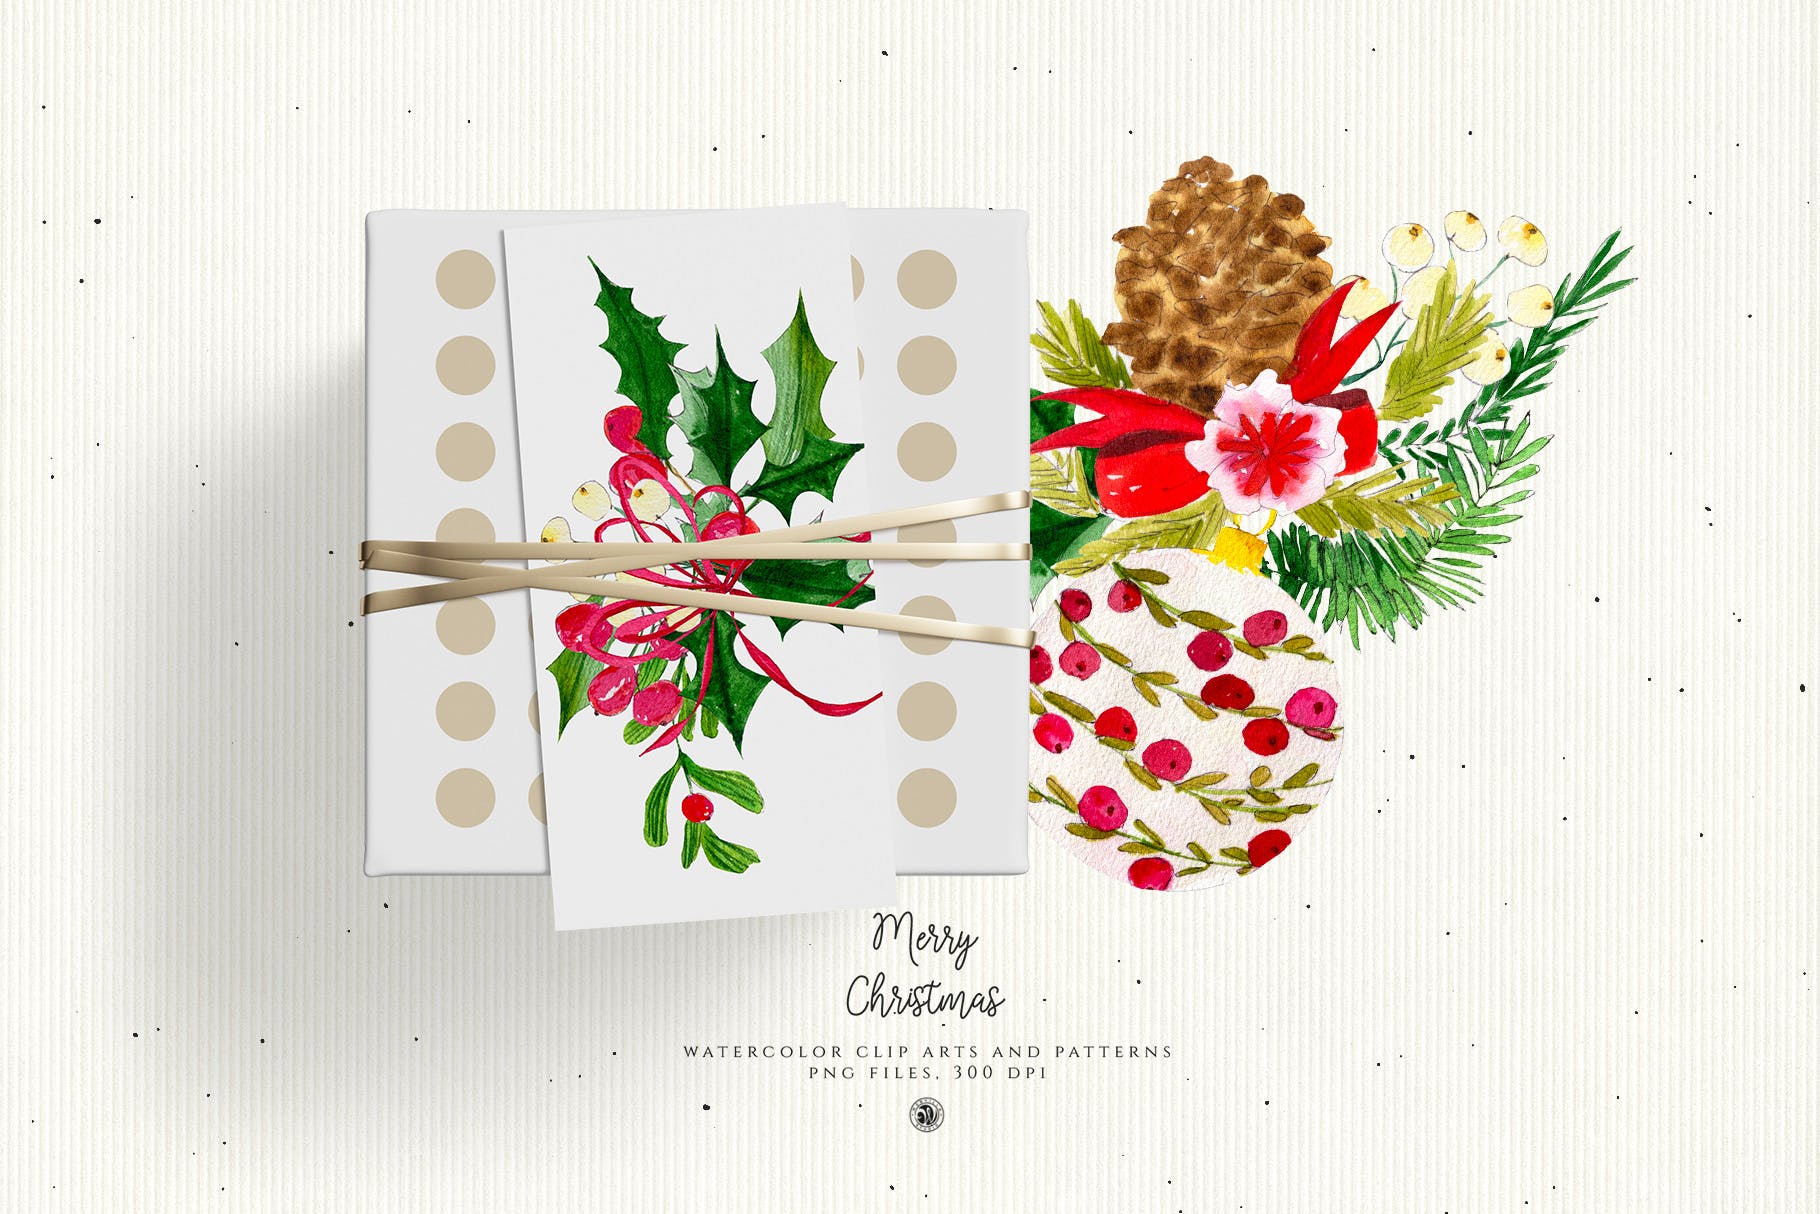 水彩手绘圣诞装饰元素PNG高清图片素材 Christmas Decorations插图(4)